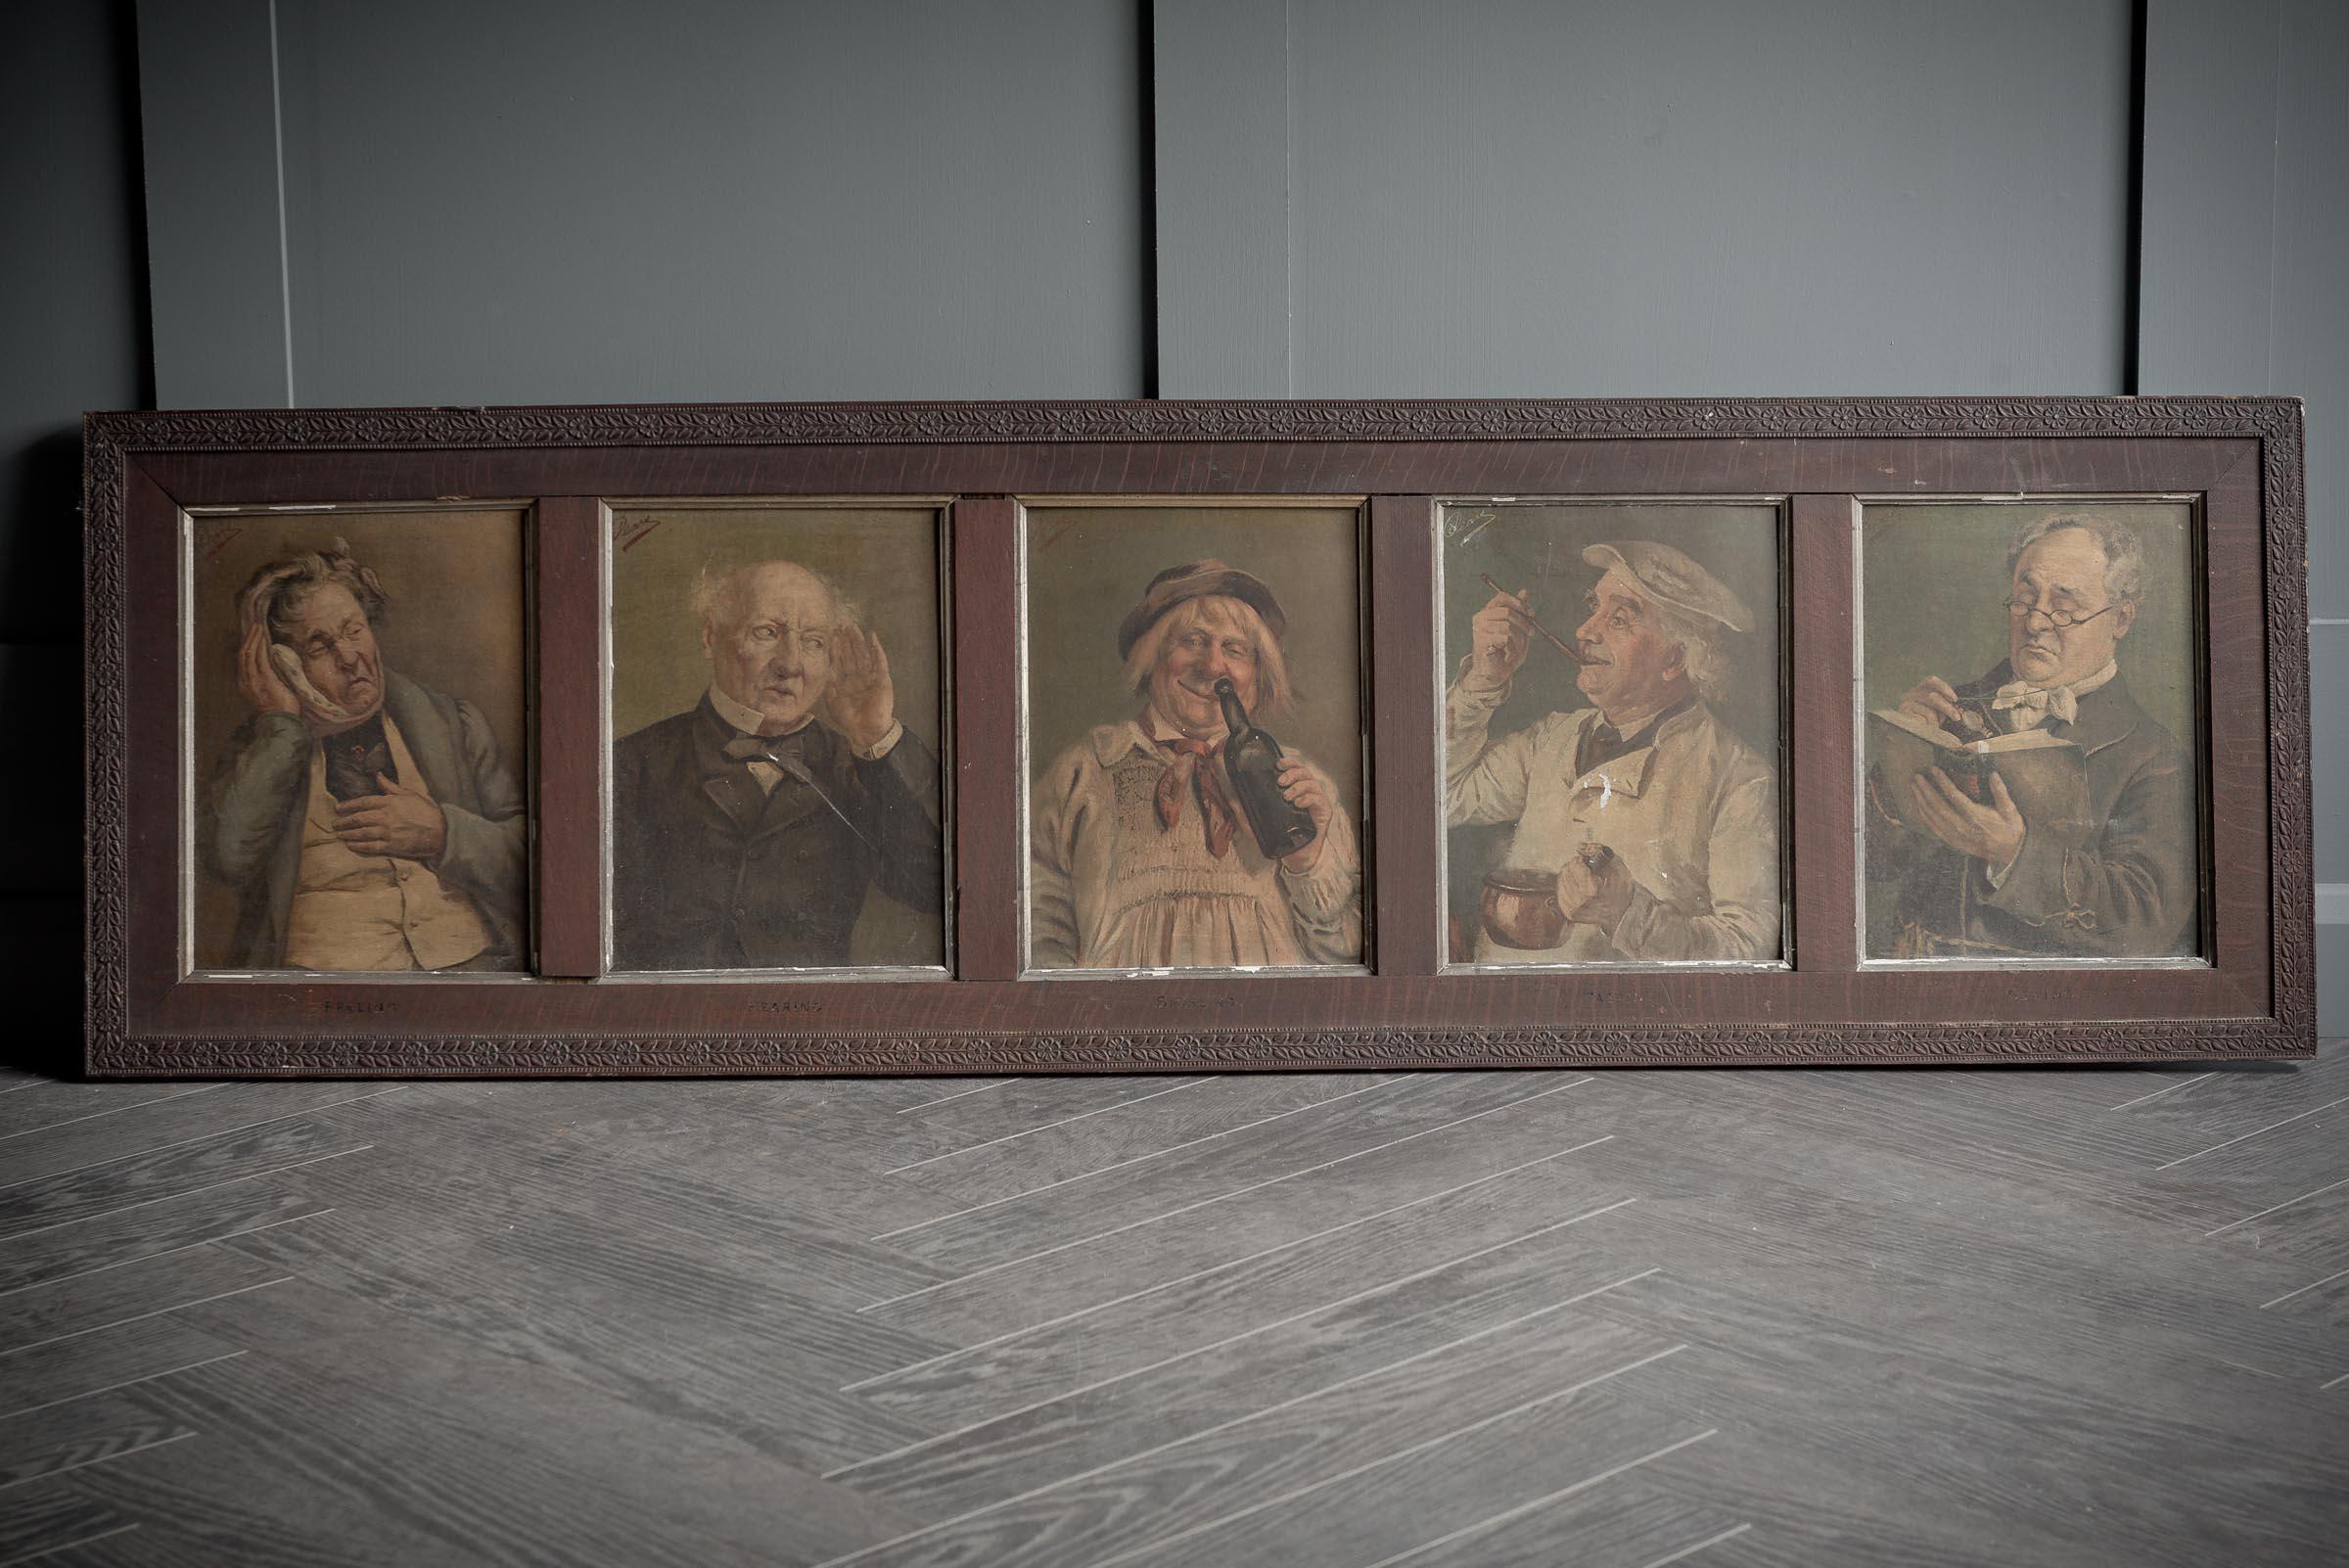 Diese wunderbare Apothekenwerbung von Pears aus dem 19. Jahrhundert zeigt 5 Männer mit verschiedenen Krankheiten, die ihr Fühlen, Hören, Sehen, Riechen und Schmecken beeinträchtigen. Diese sind auf dem originalen Holzrahmen eingraviert, der auch den